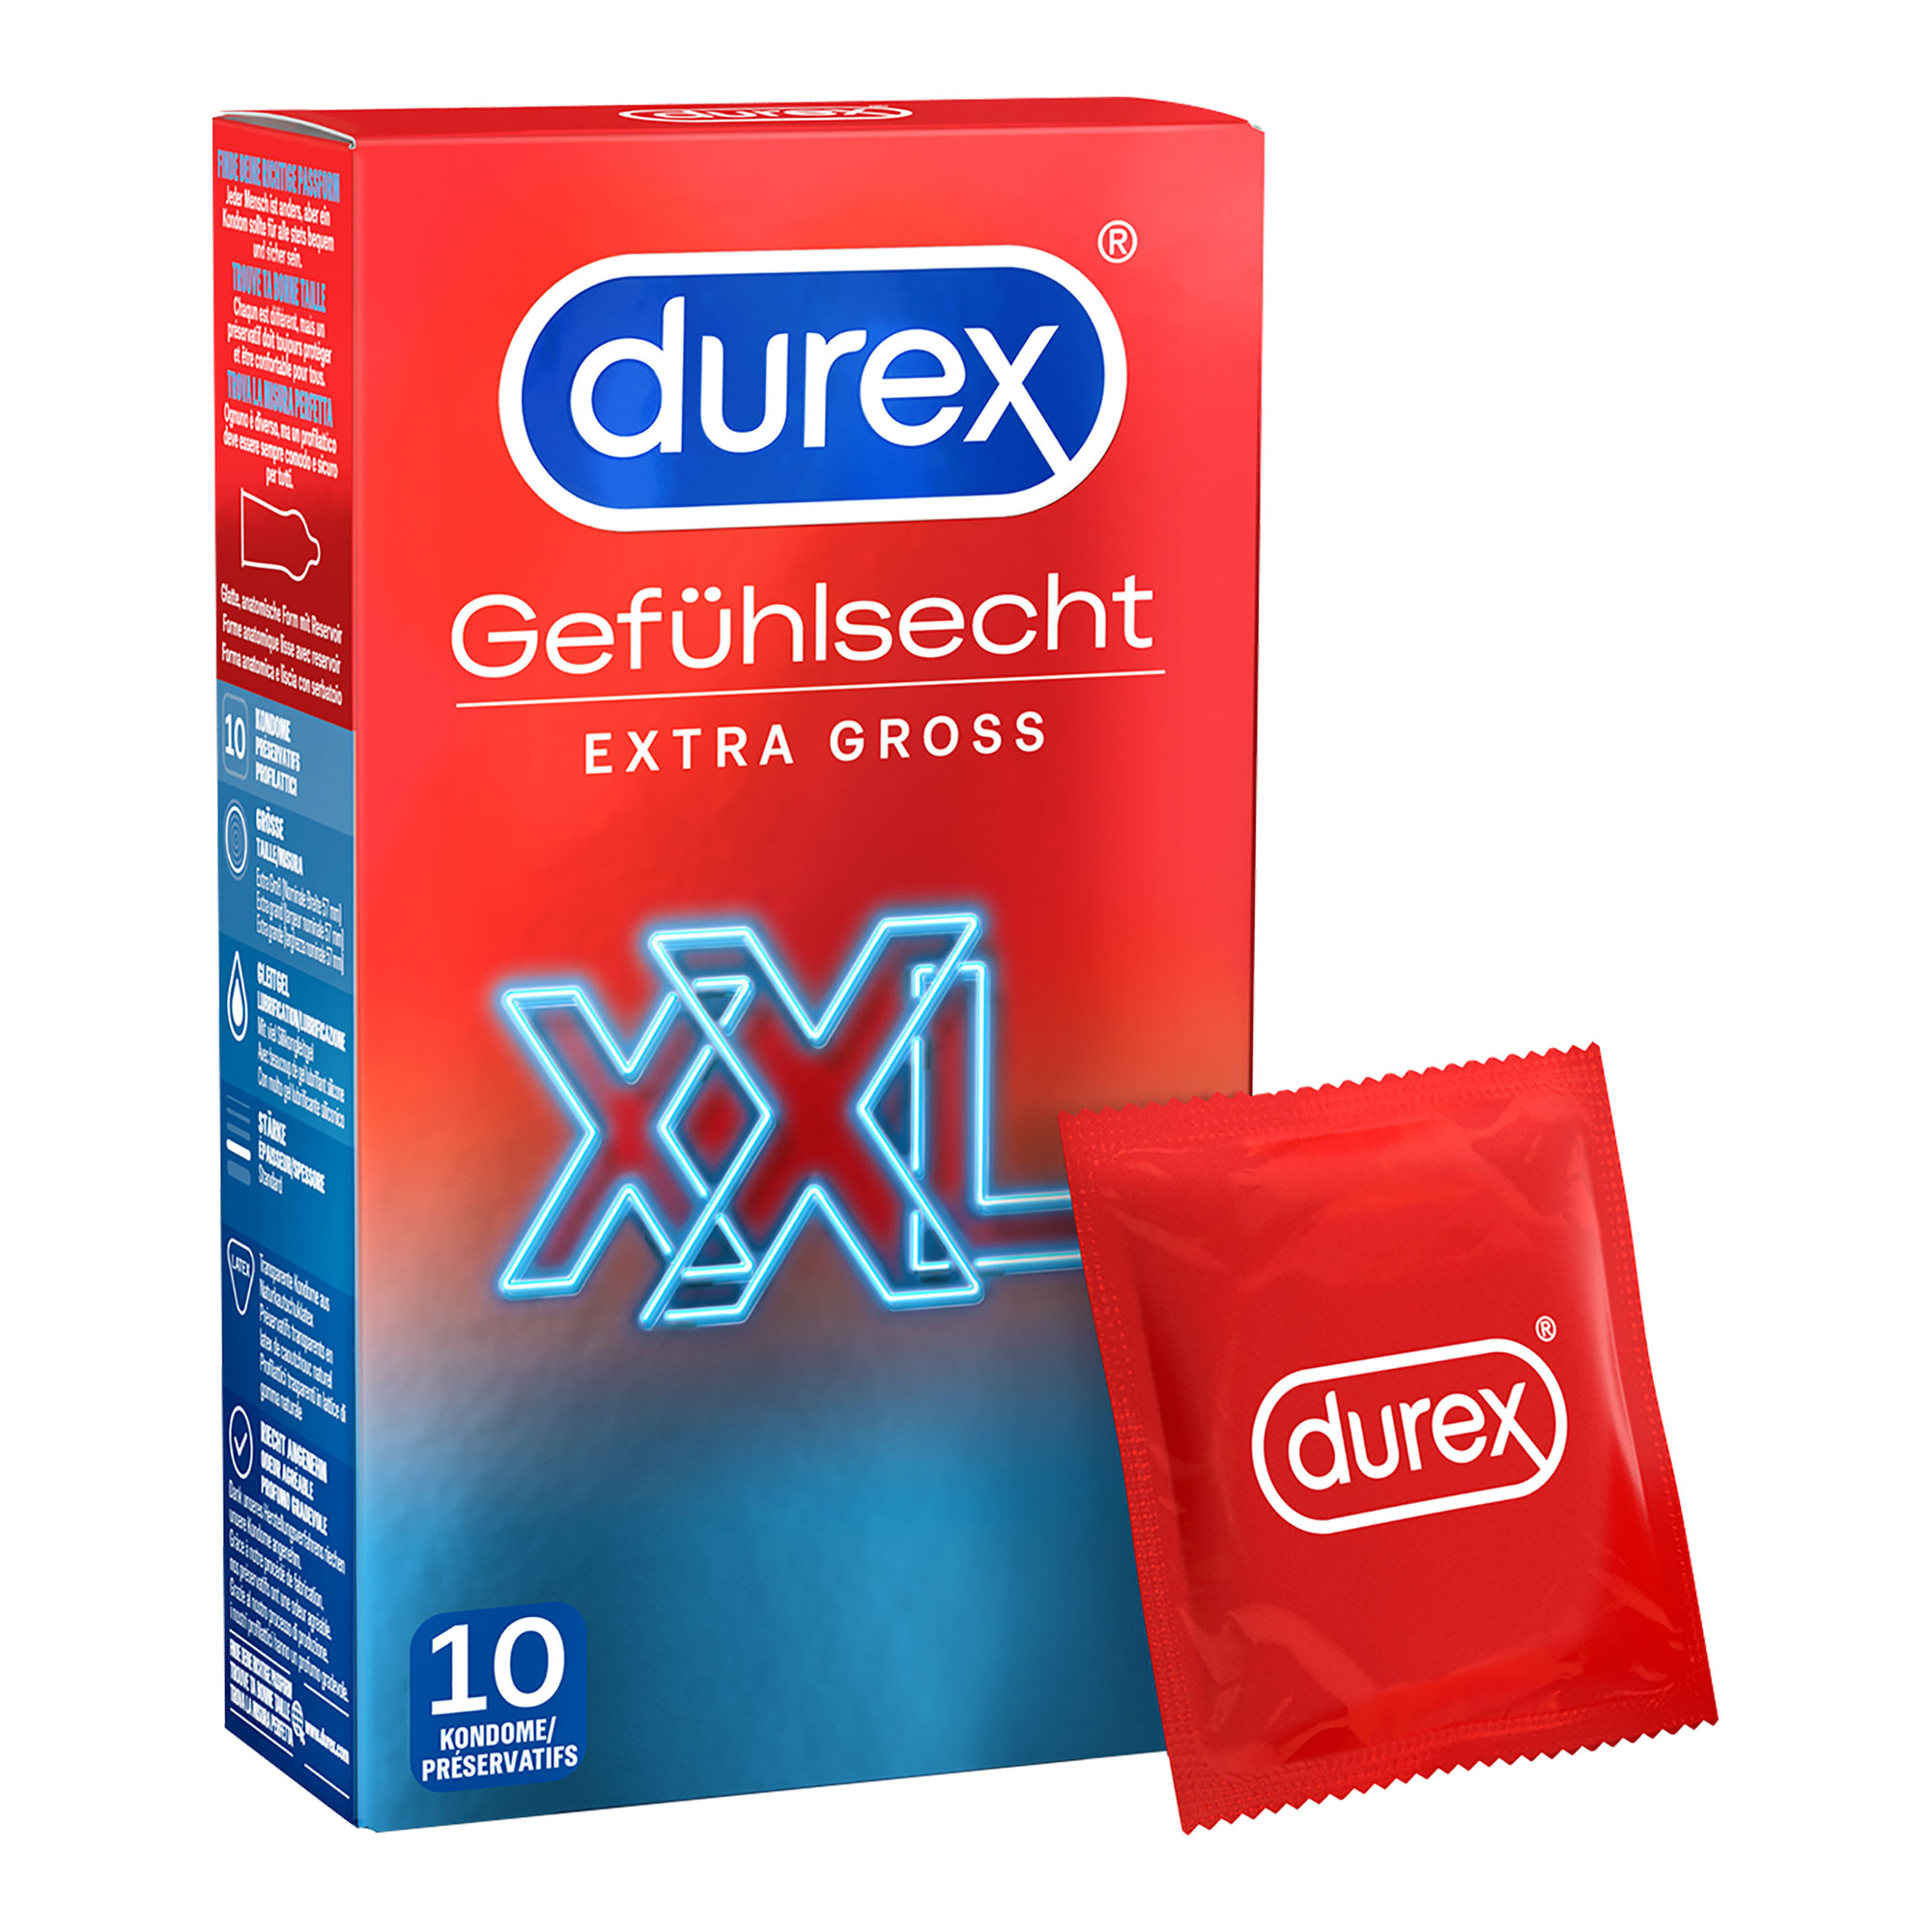 Extra große Kondome für mehr Komfort.